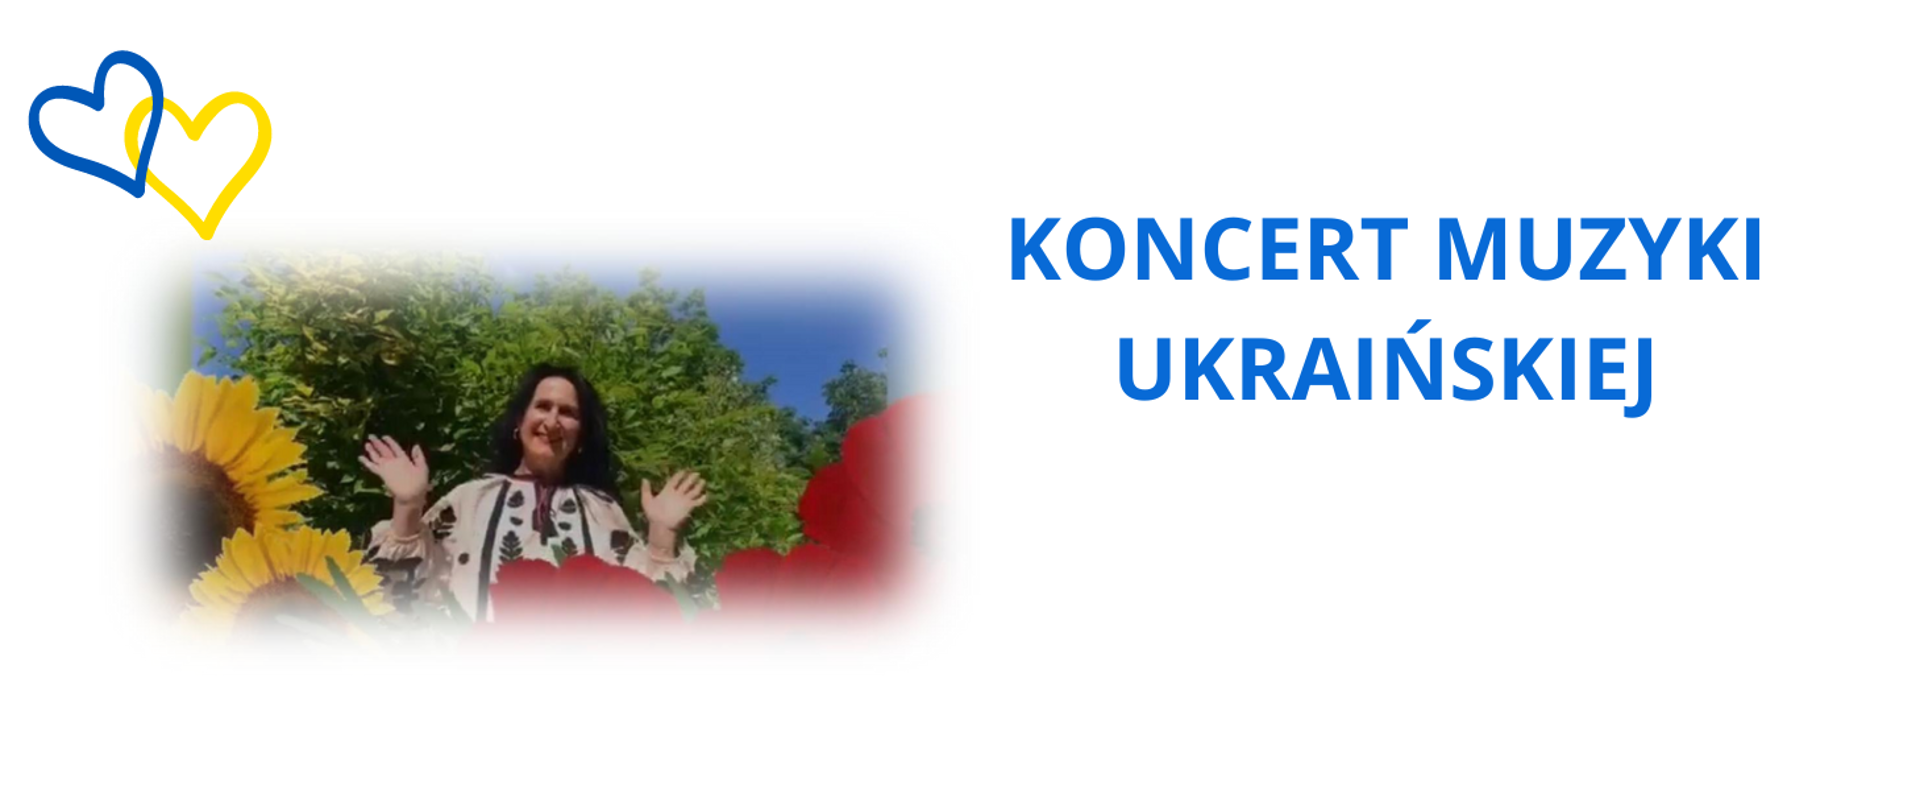 baner na białym tle, po prawej niebieski napis wydarzenia, po lewej zdjęcie organizatorki i serca w kolorze flagi ukrainy